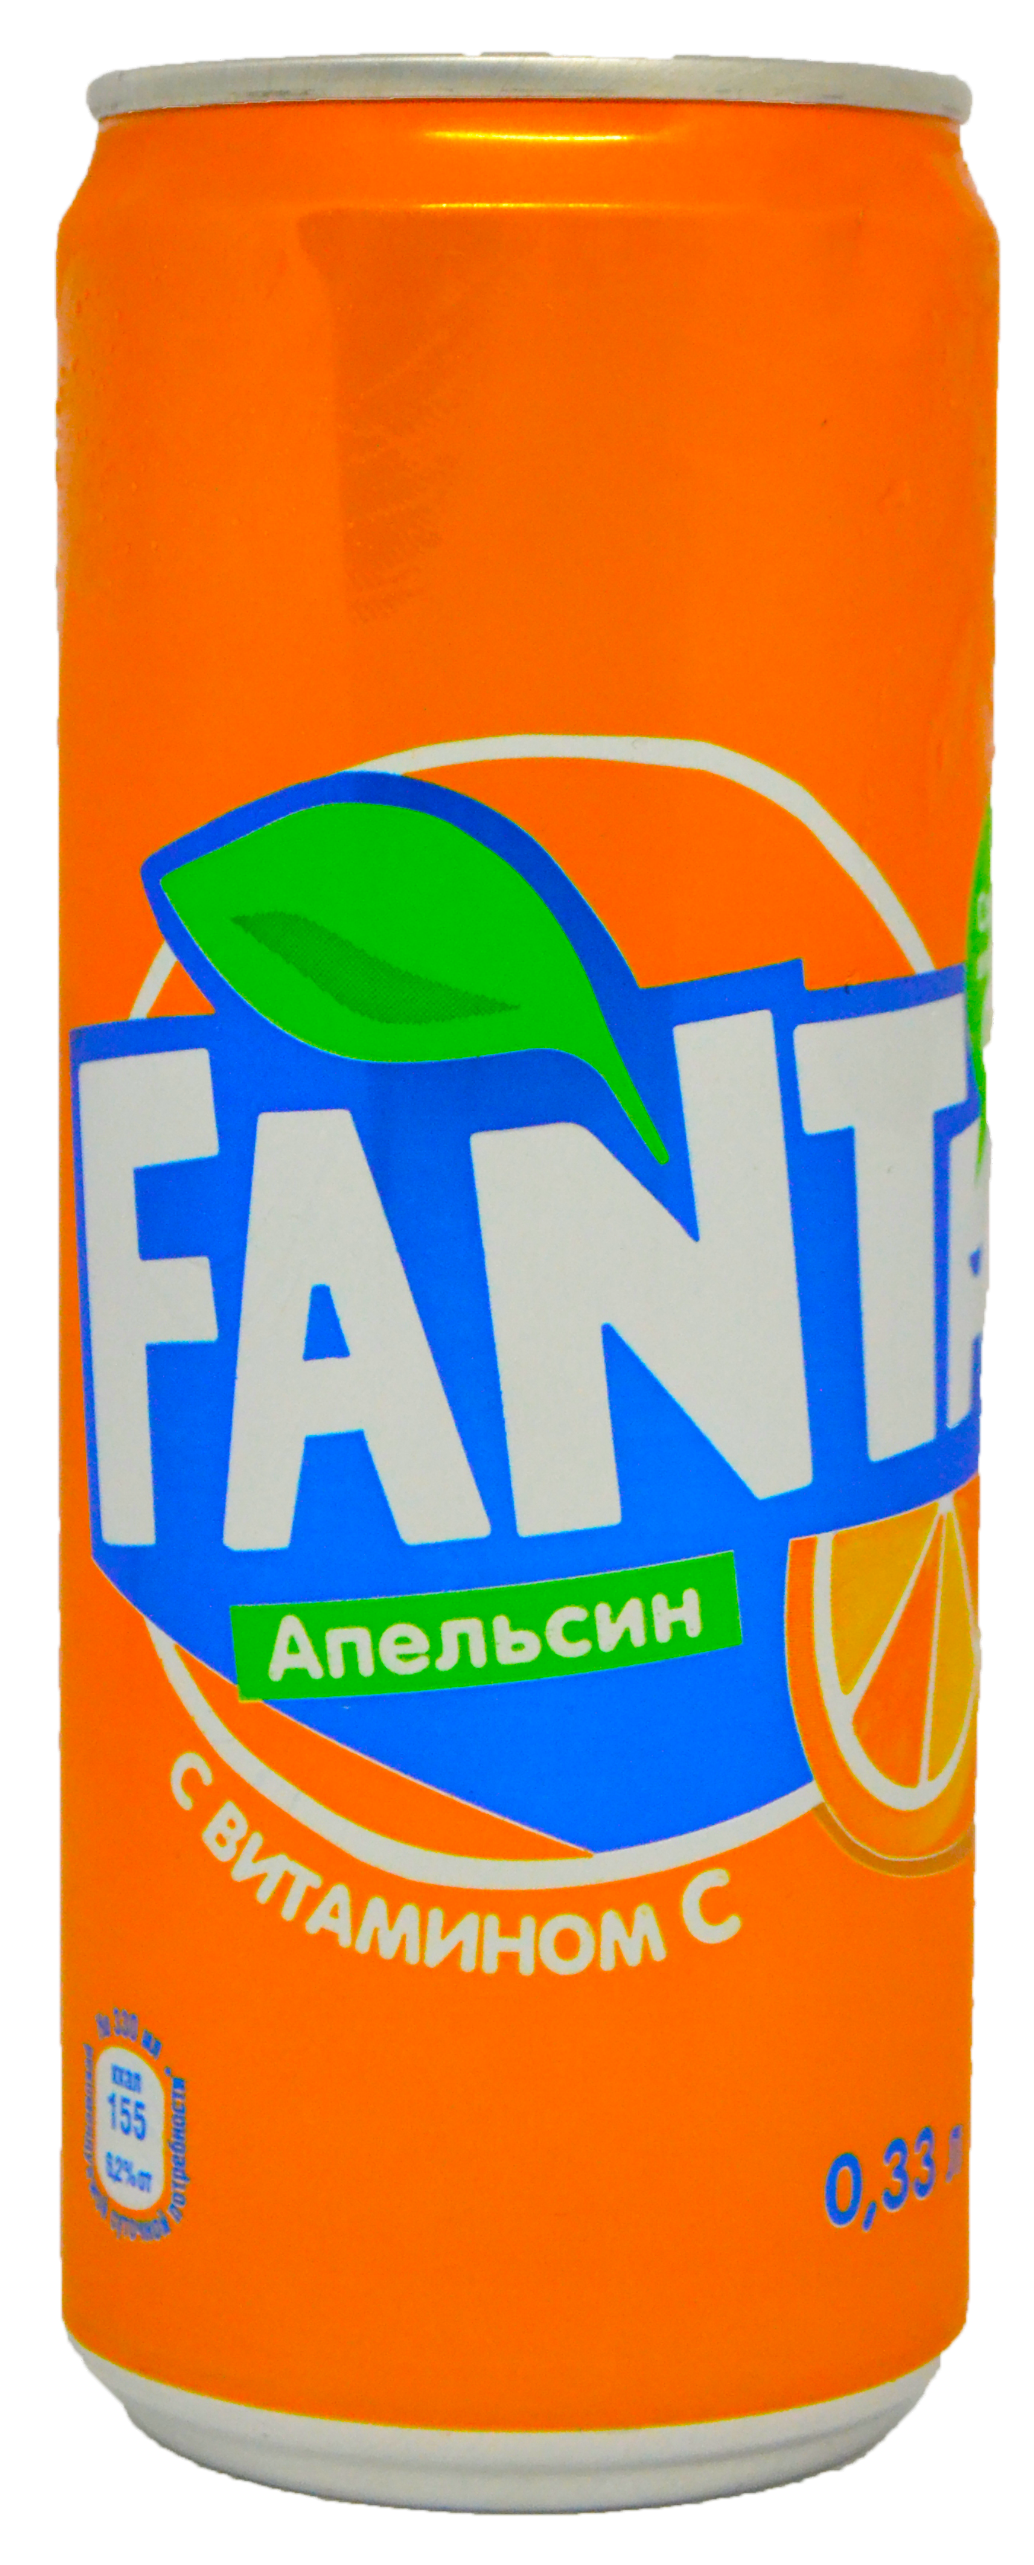 Fanta-6